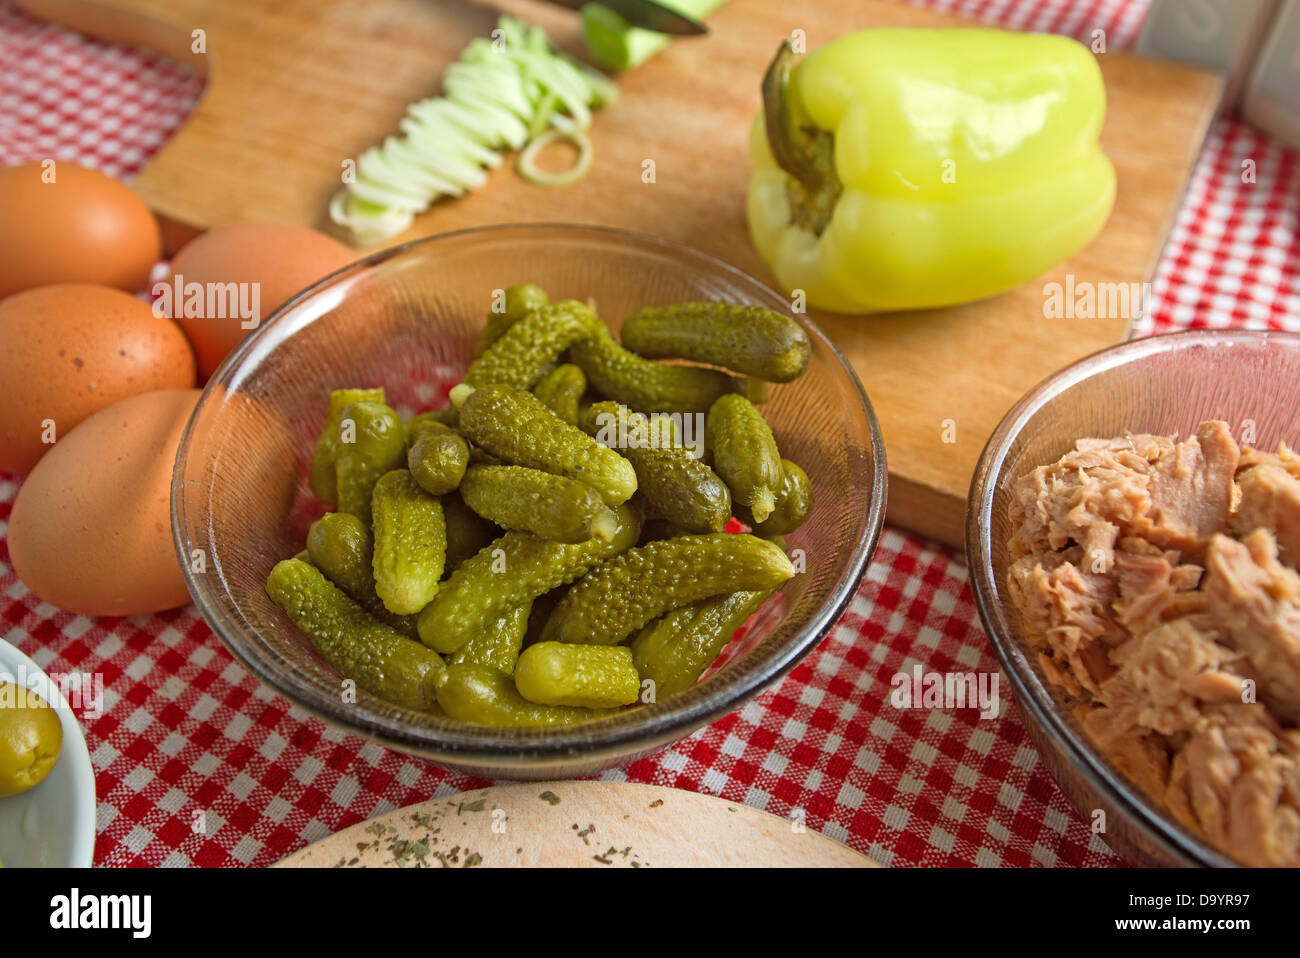 Pickles. Cetrioli sottaceto nel piatto e con altri ingredienti alimentari su un tavolo. Foto Stock